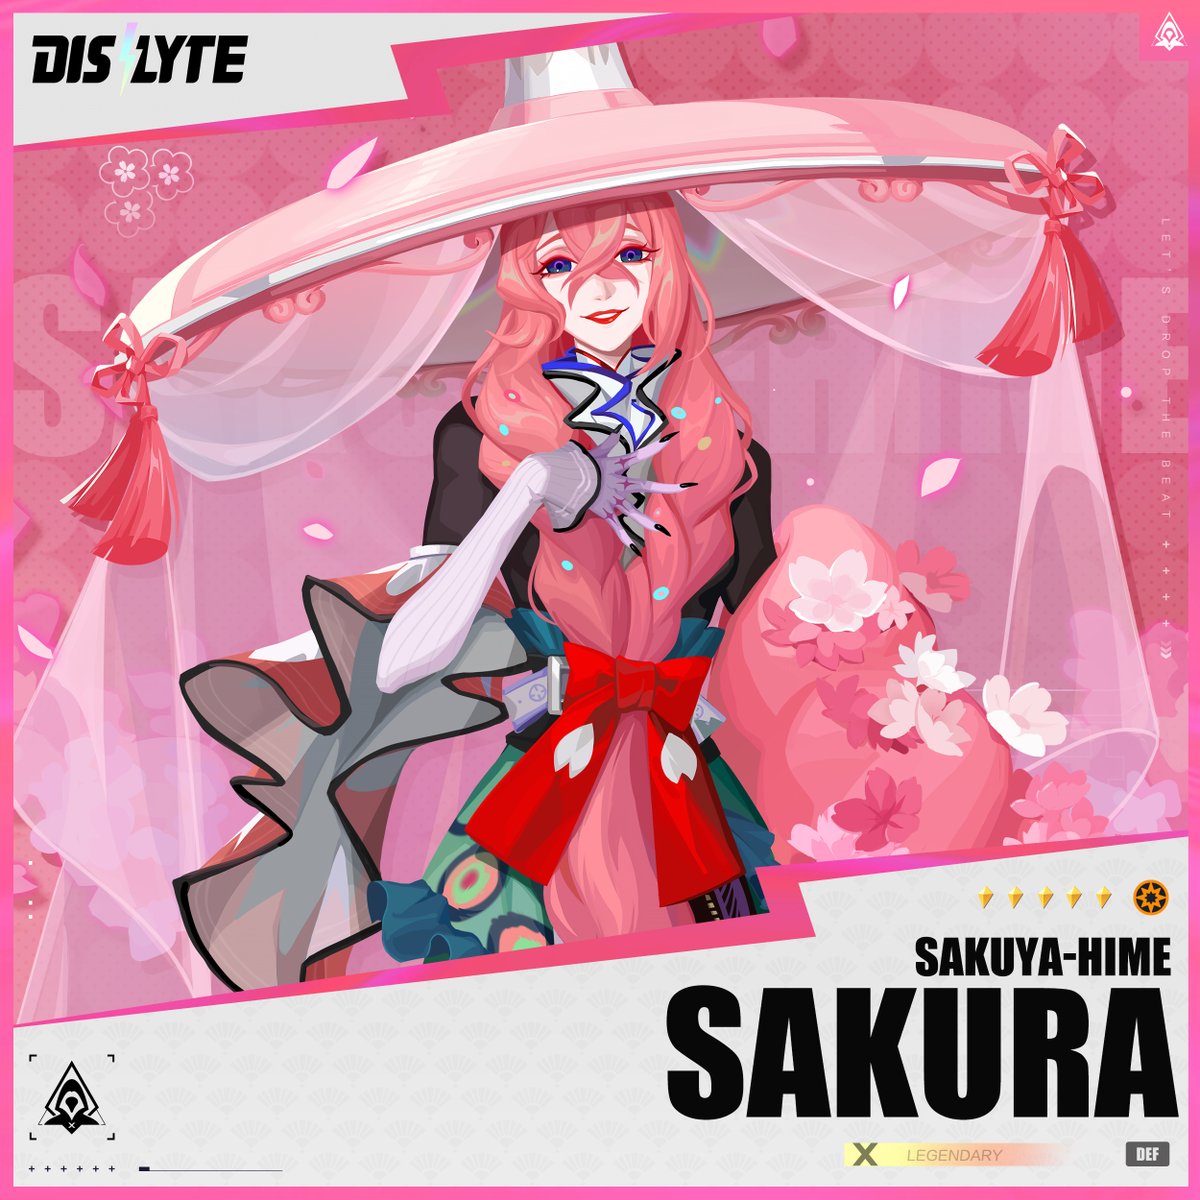 With Sakuya-hime's divine Power, Sakura strives for ultimate beauty.

#Dislyte #NewEsper #Sakura #SakuyaHime 
#CherryBlossoms #シンネオ #디스라이트 #众神派对